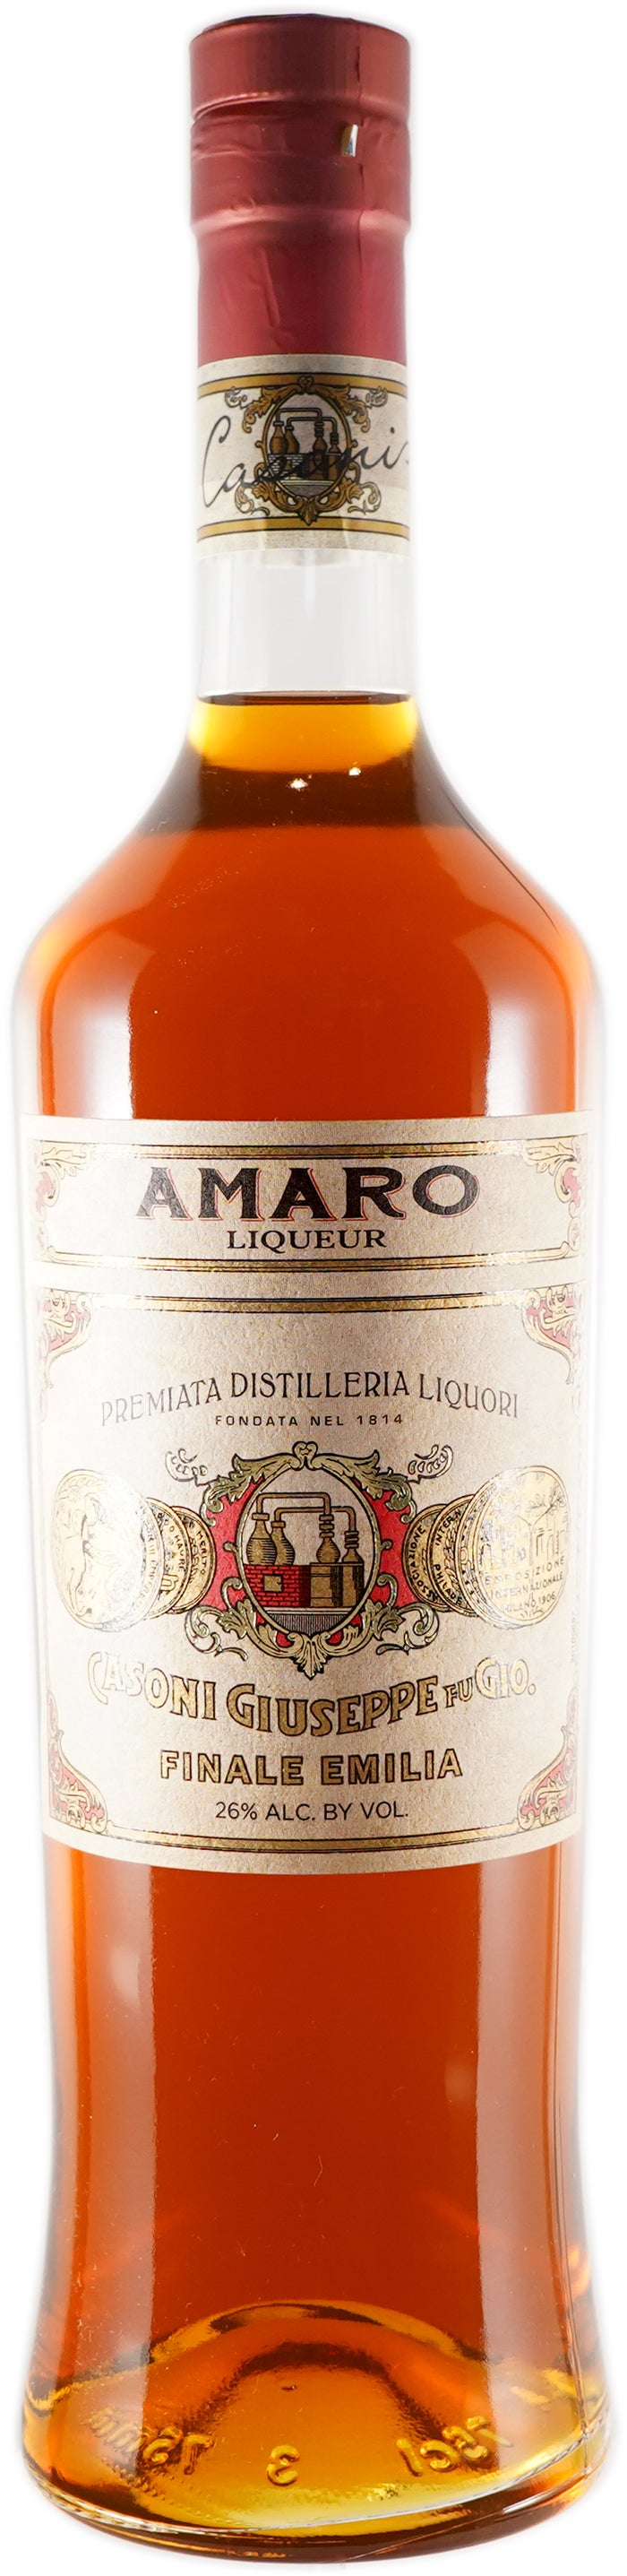 Casoni Heritage Amaro Liqueur